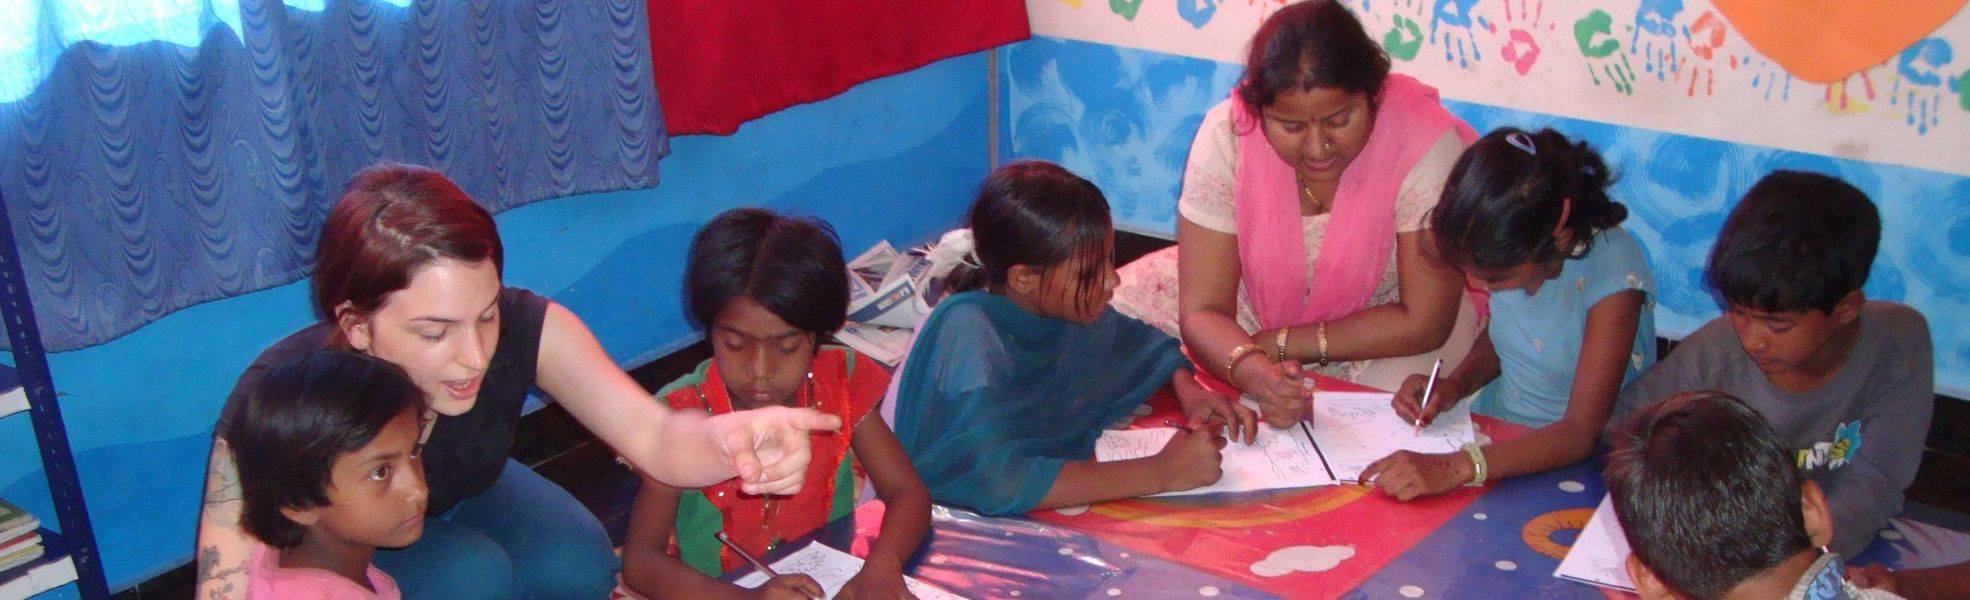 Volunteer bei ihrem Auslandspraktikum in Indien mit Kindern